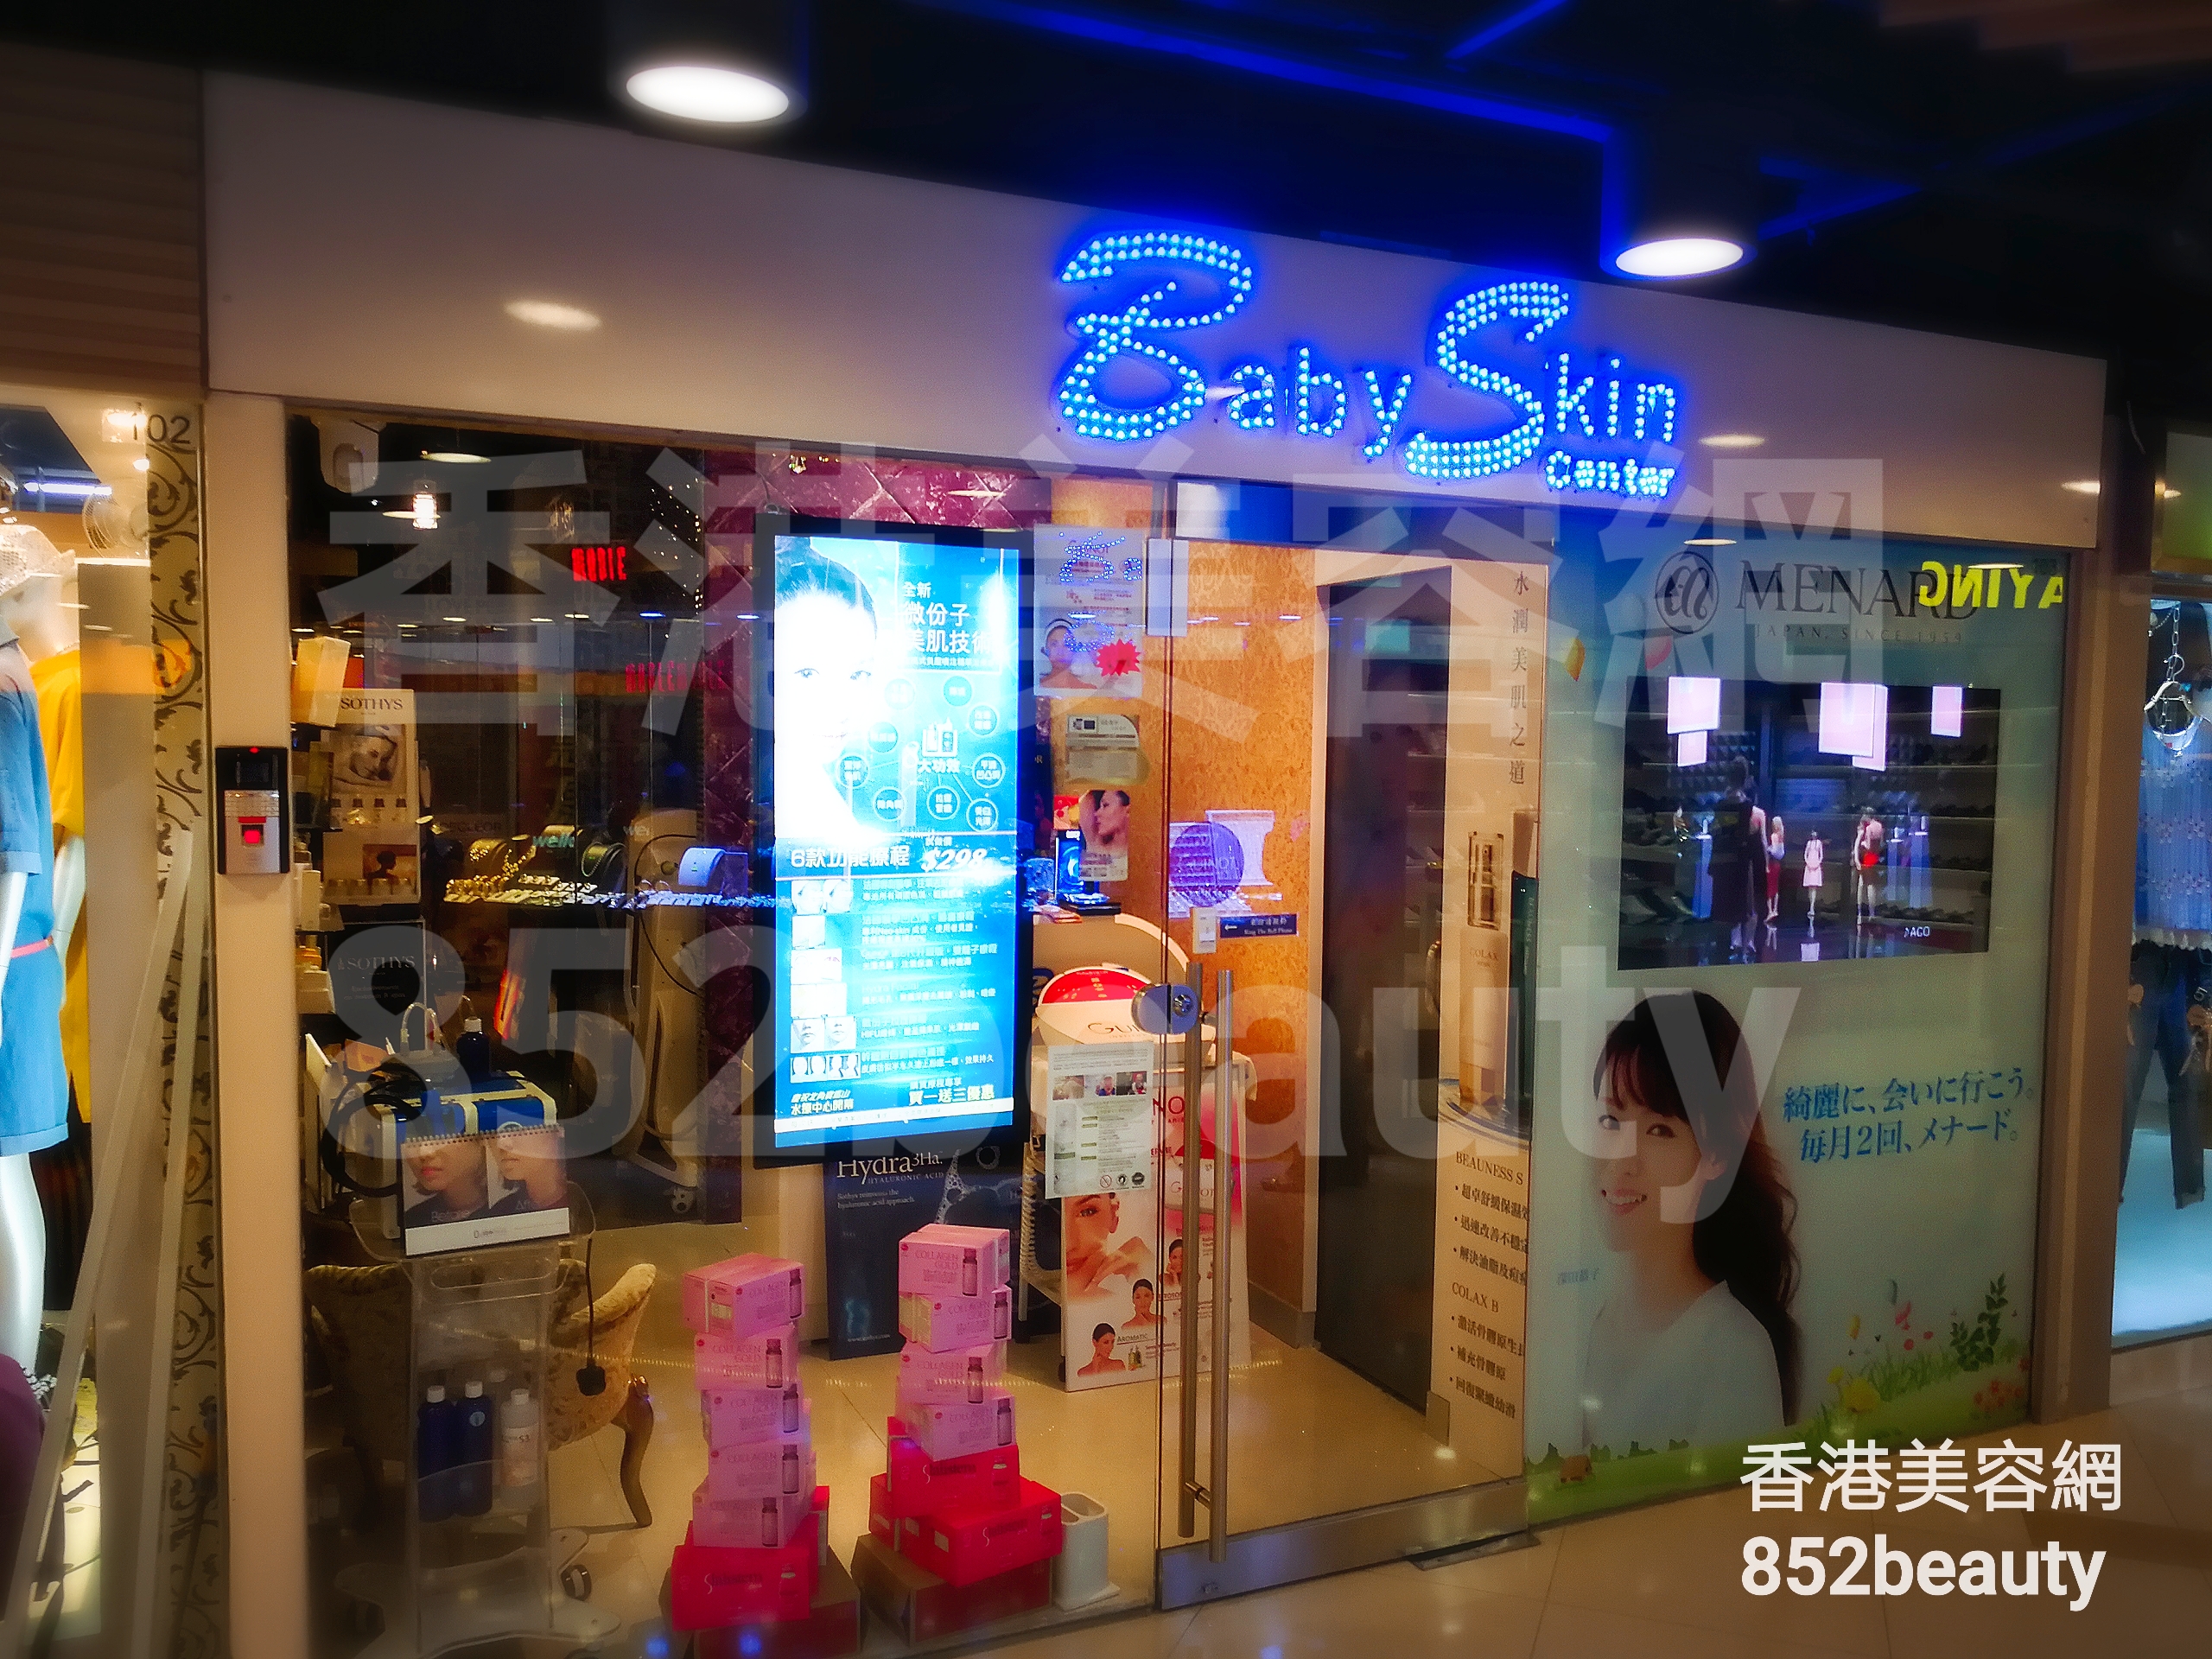 美容院 Beauty Salon: Baby Skin Center